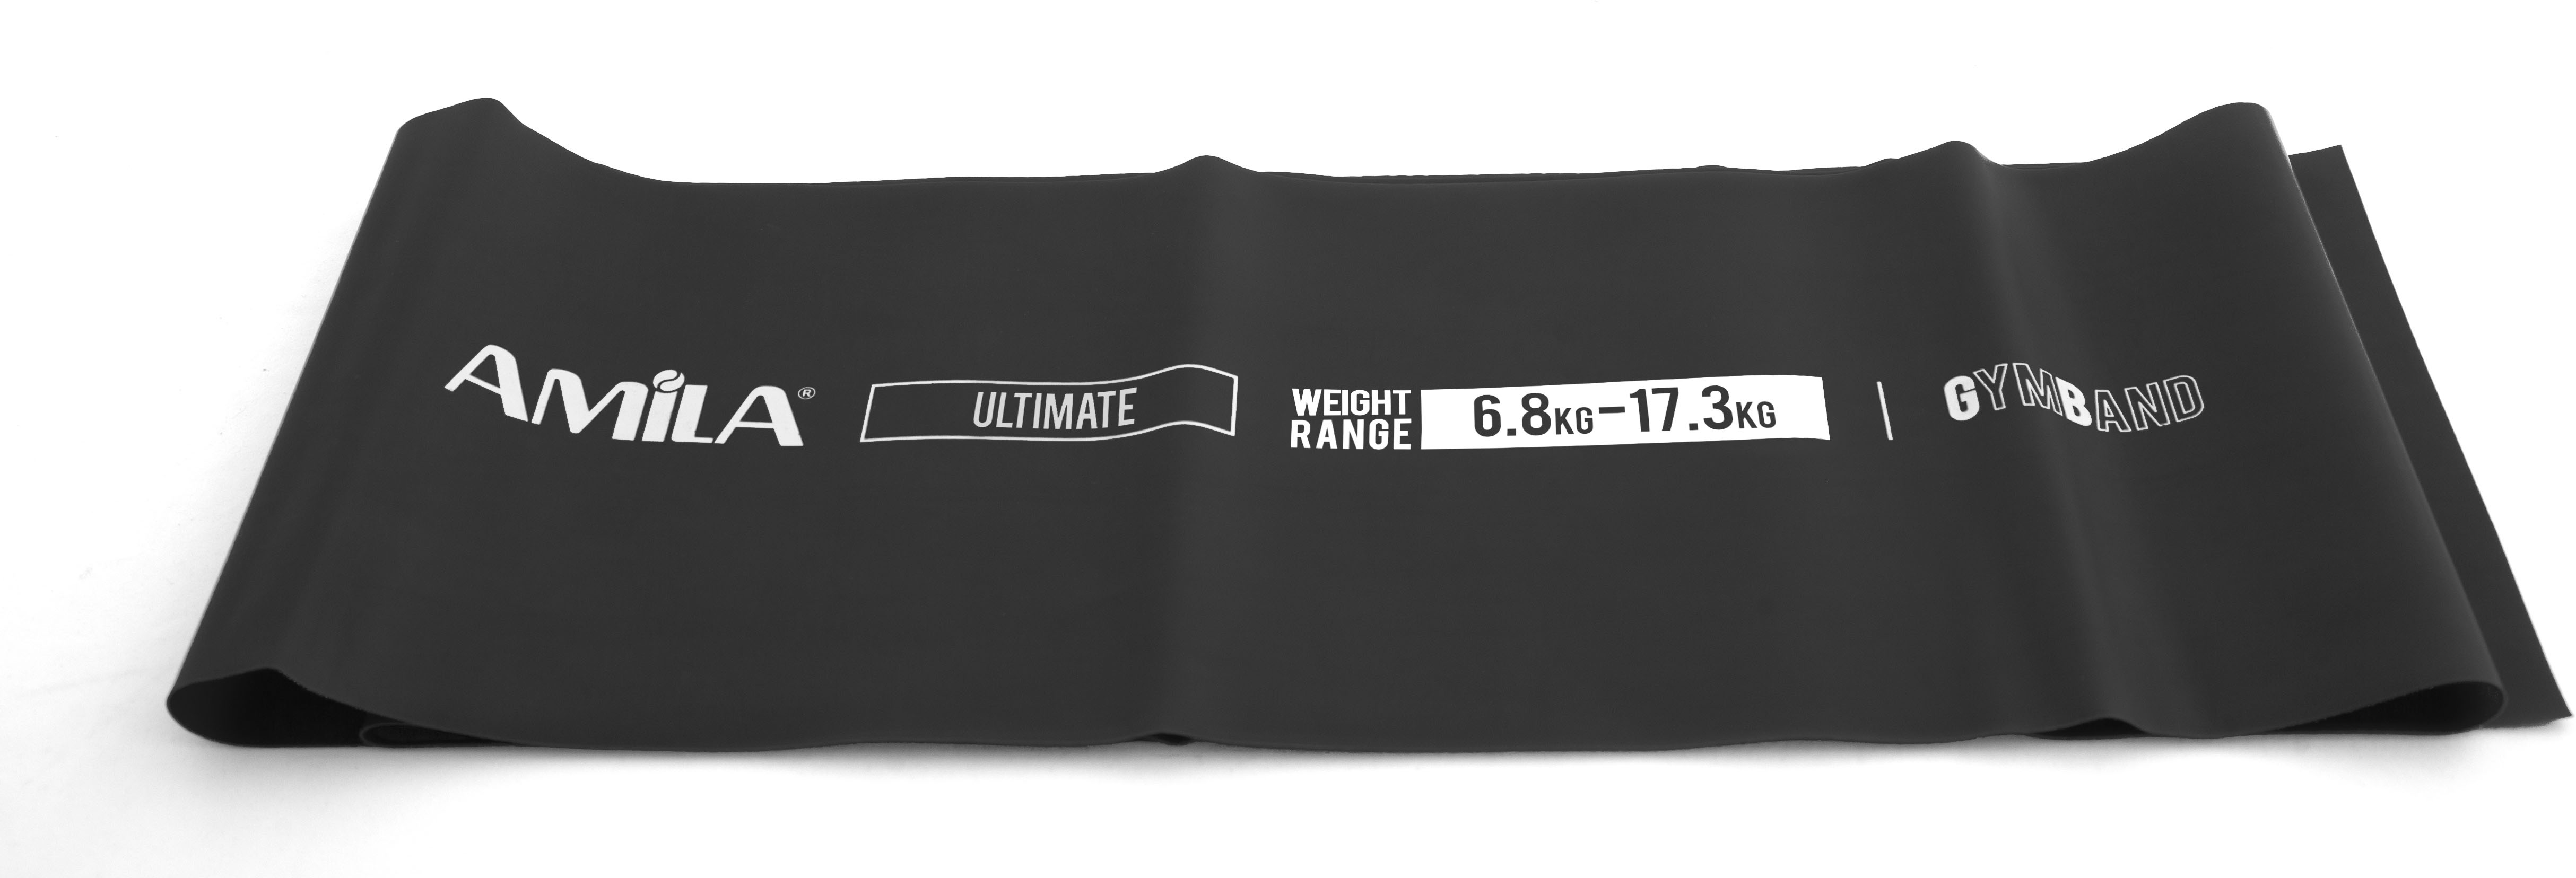 Amila Λαστιχο Gymband 2.5M Ultimate Μαυρο (48189) ΜΑΥΡΟ